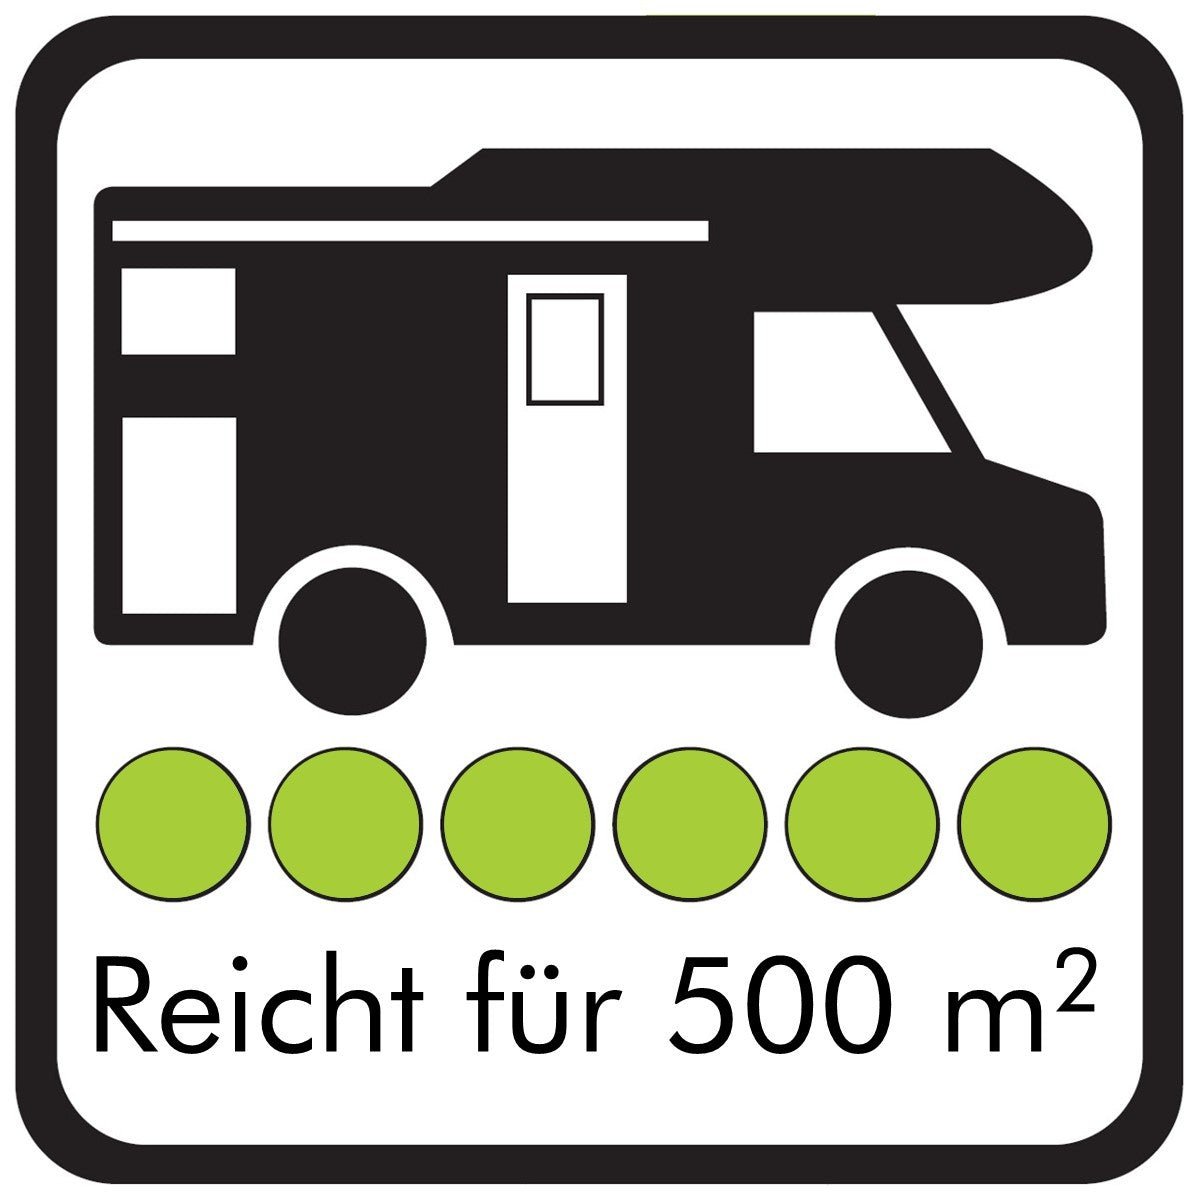 Außen-SAUBER 500 ml Konzentrat (Wohnwagenreiniger / Wohnmobilreiniger) - CLEANOFANT